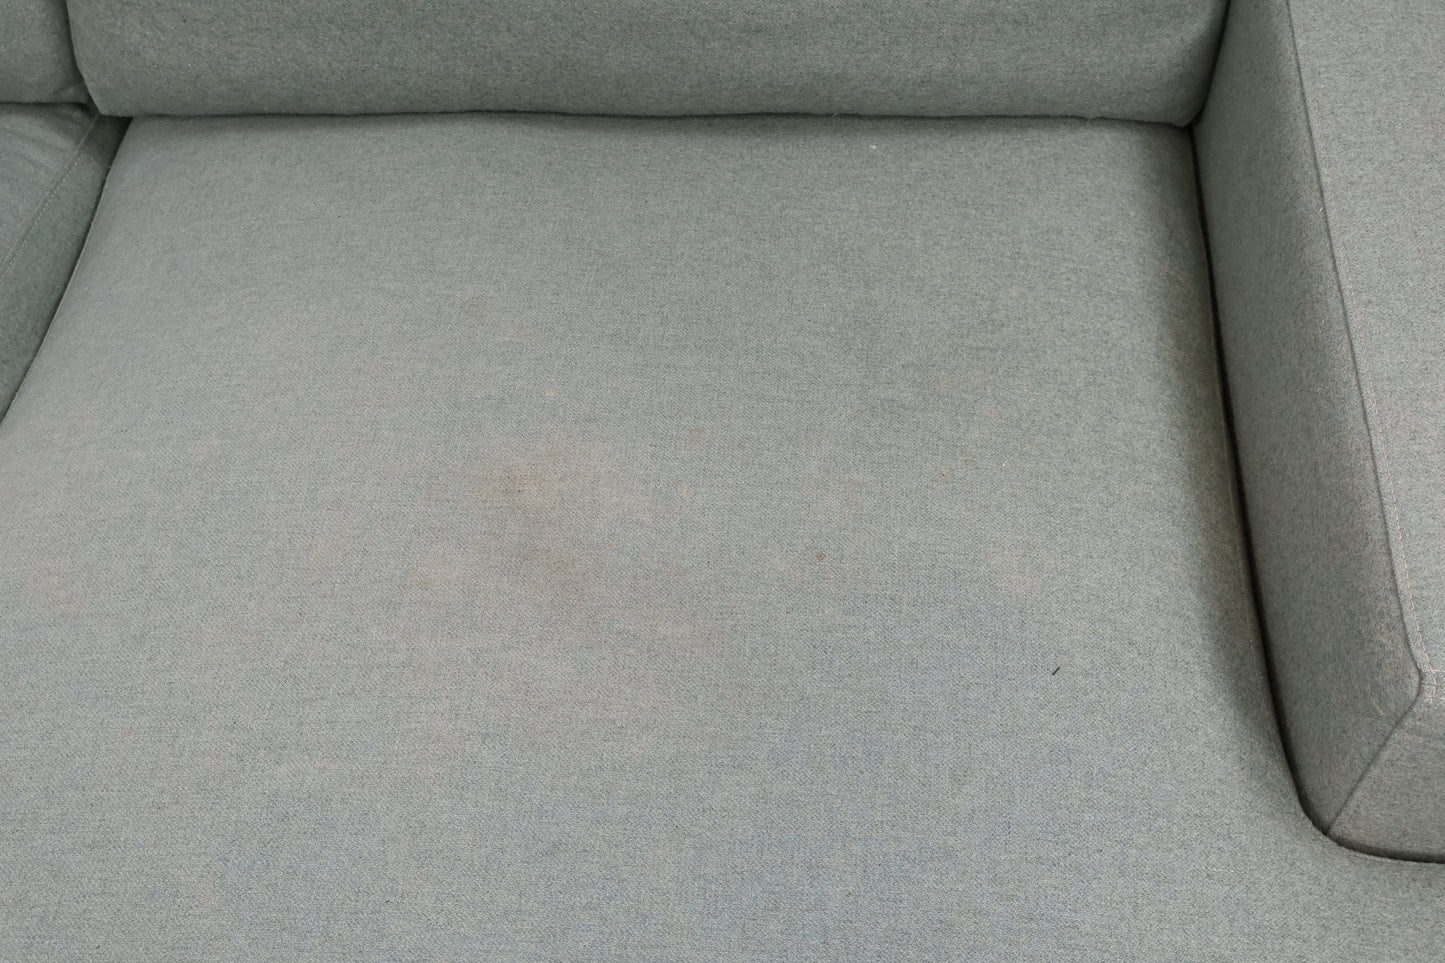 Nyrenset | Bolia Scandinavia 4-seter sofa med sjeselong